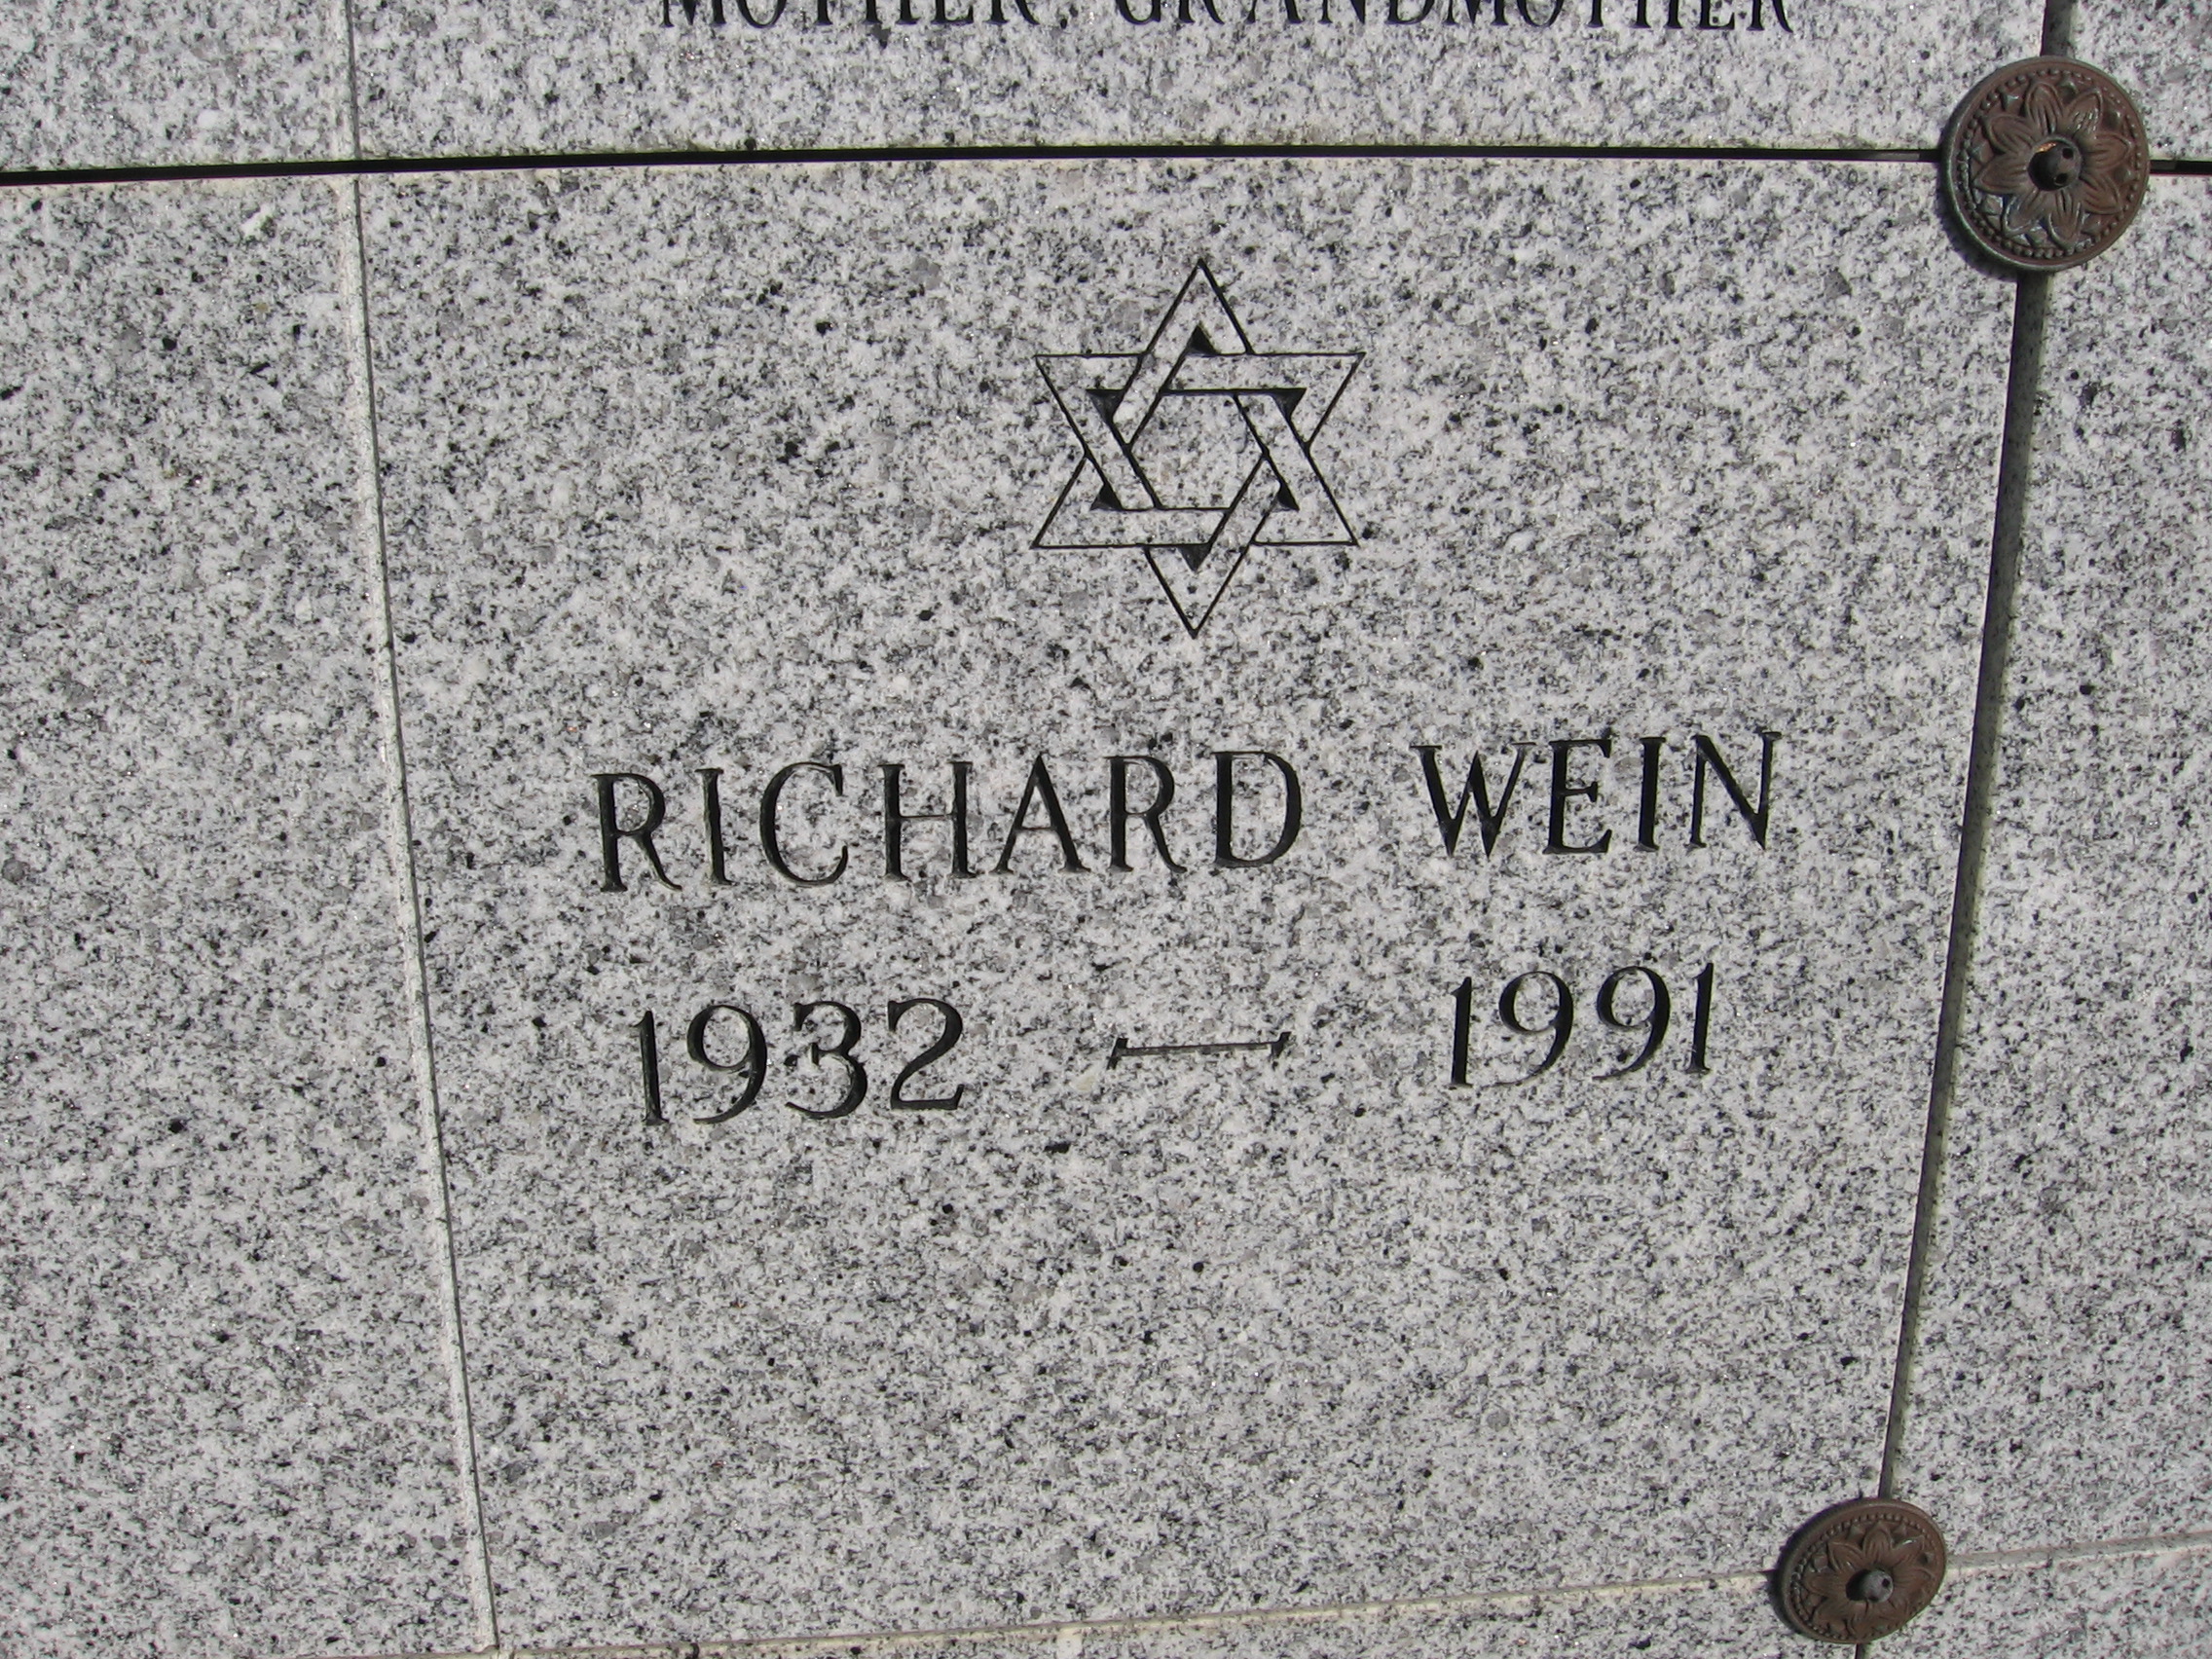 Richard Wein